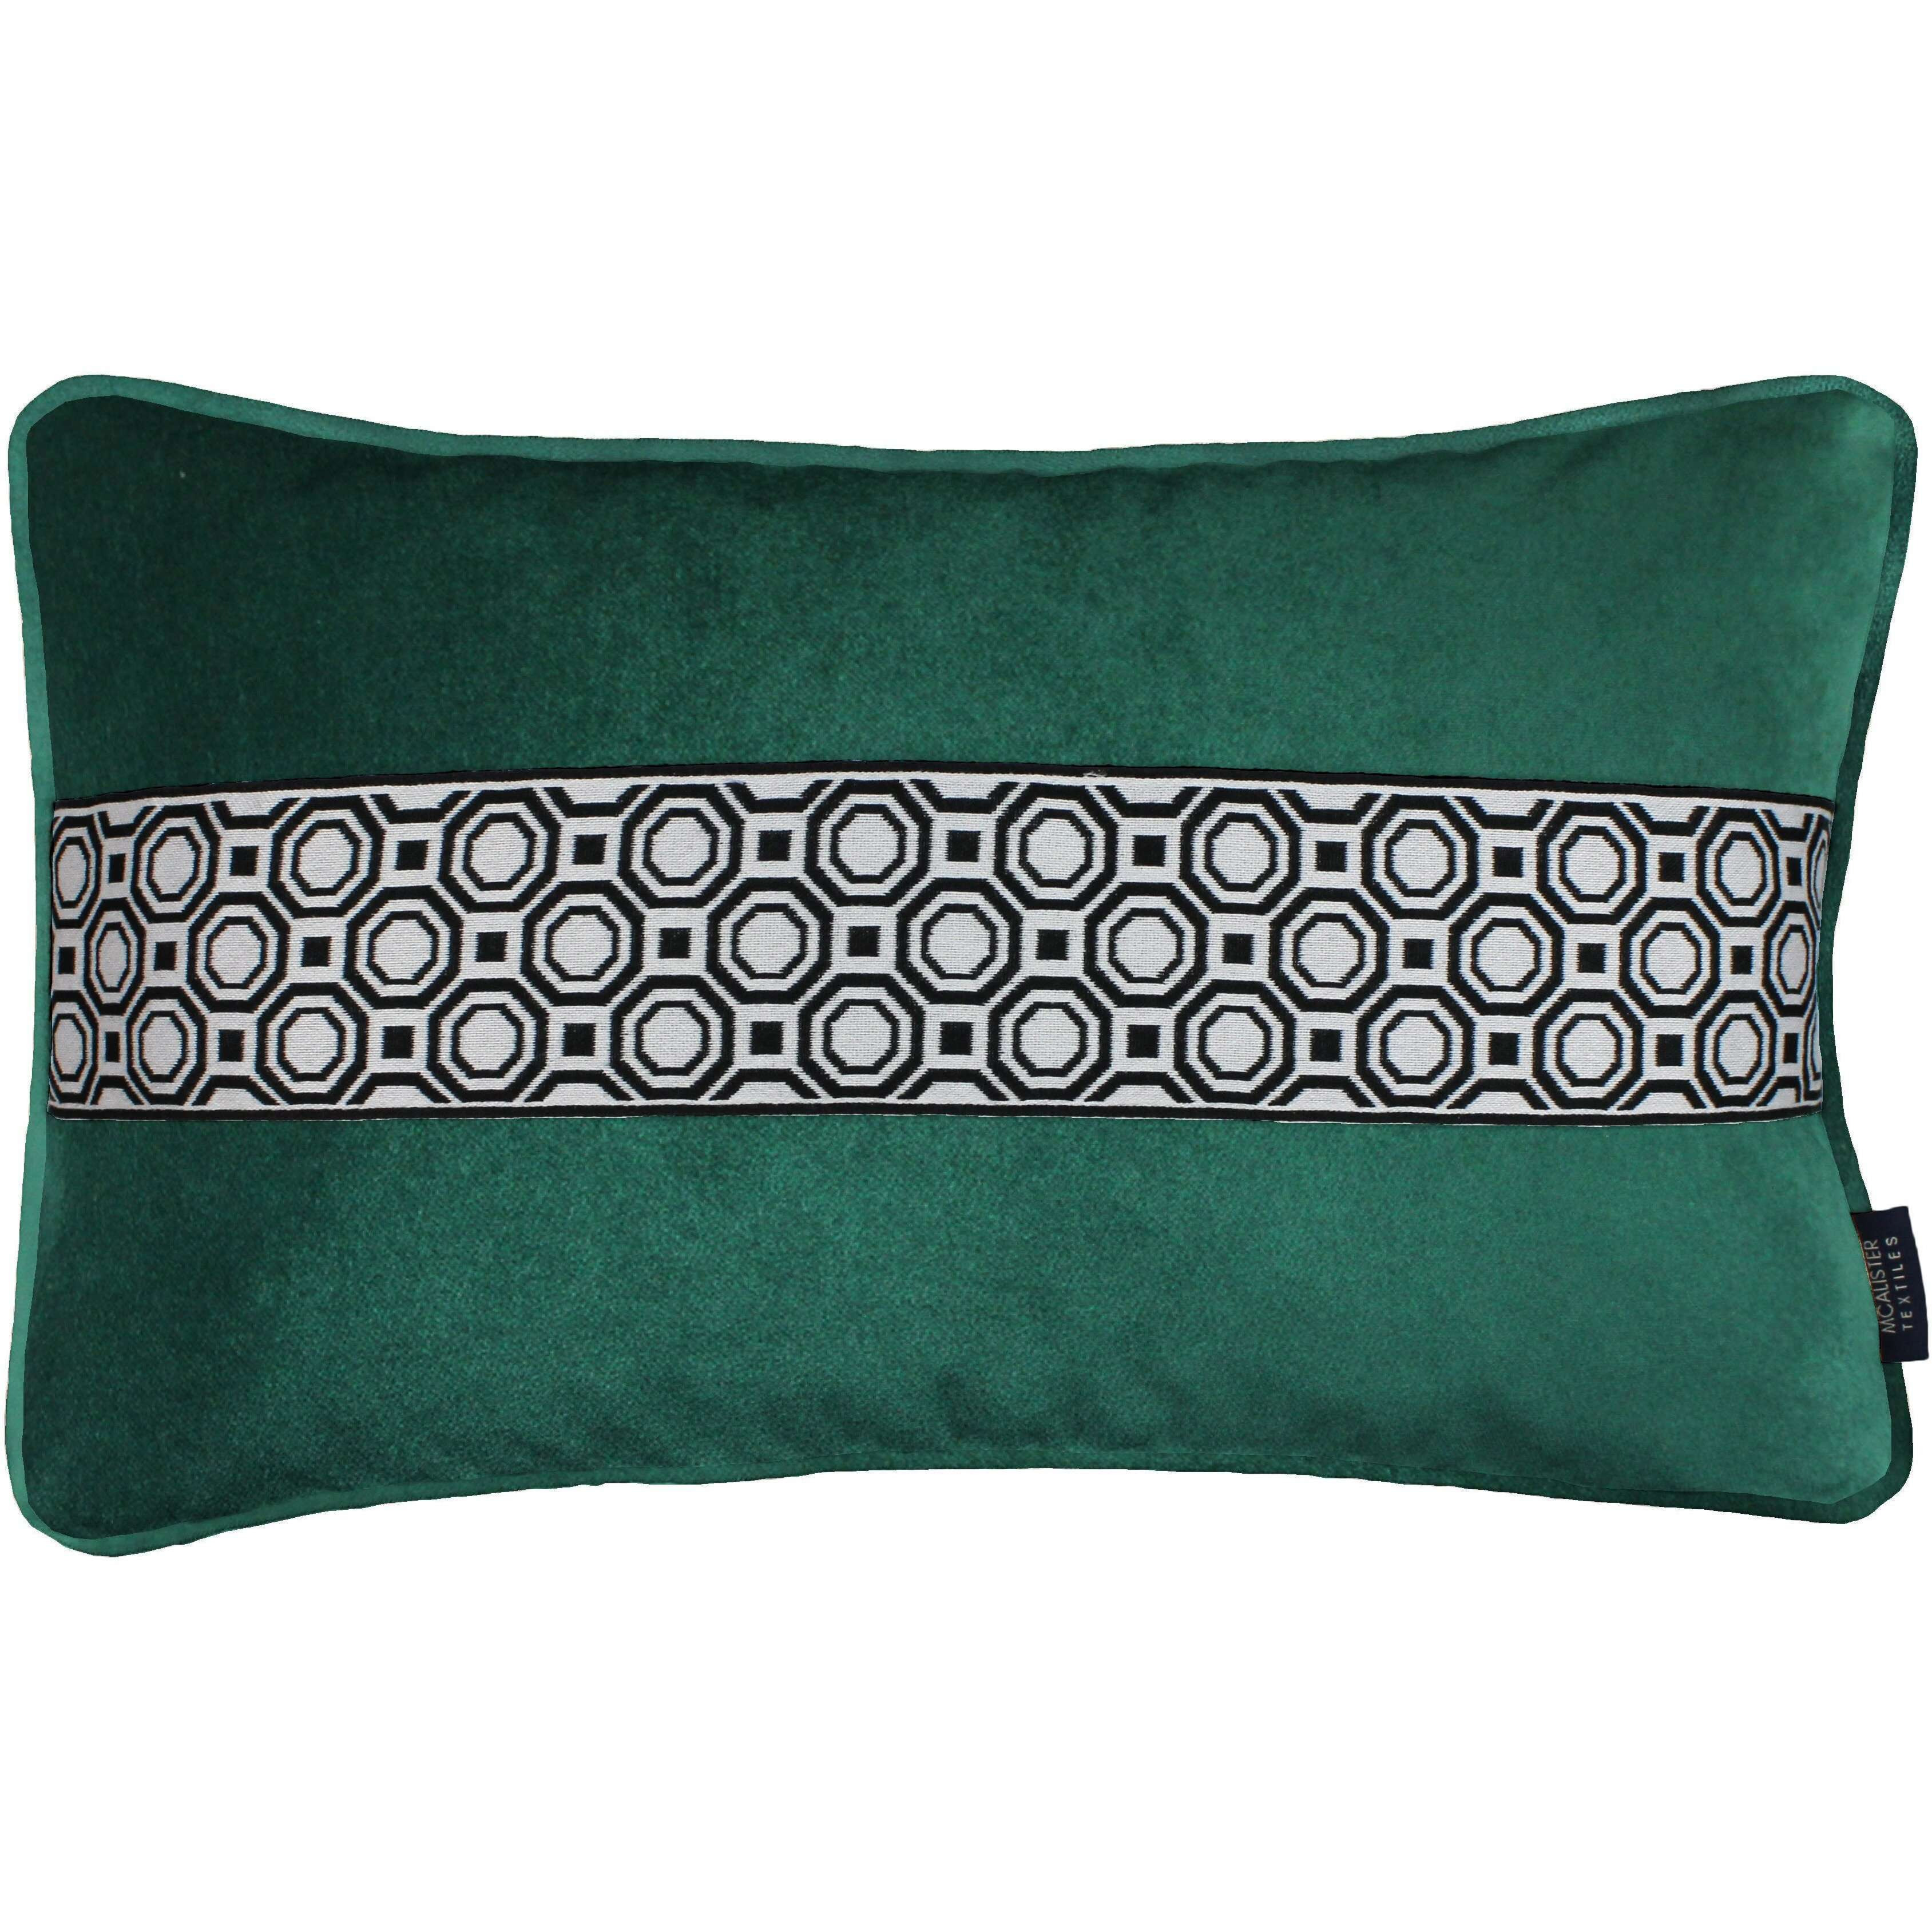 Cancun Striped Emerald Green Velvet Pillow, Polyester Filler / 50cm x 30cm